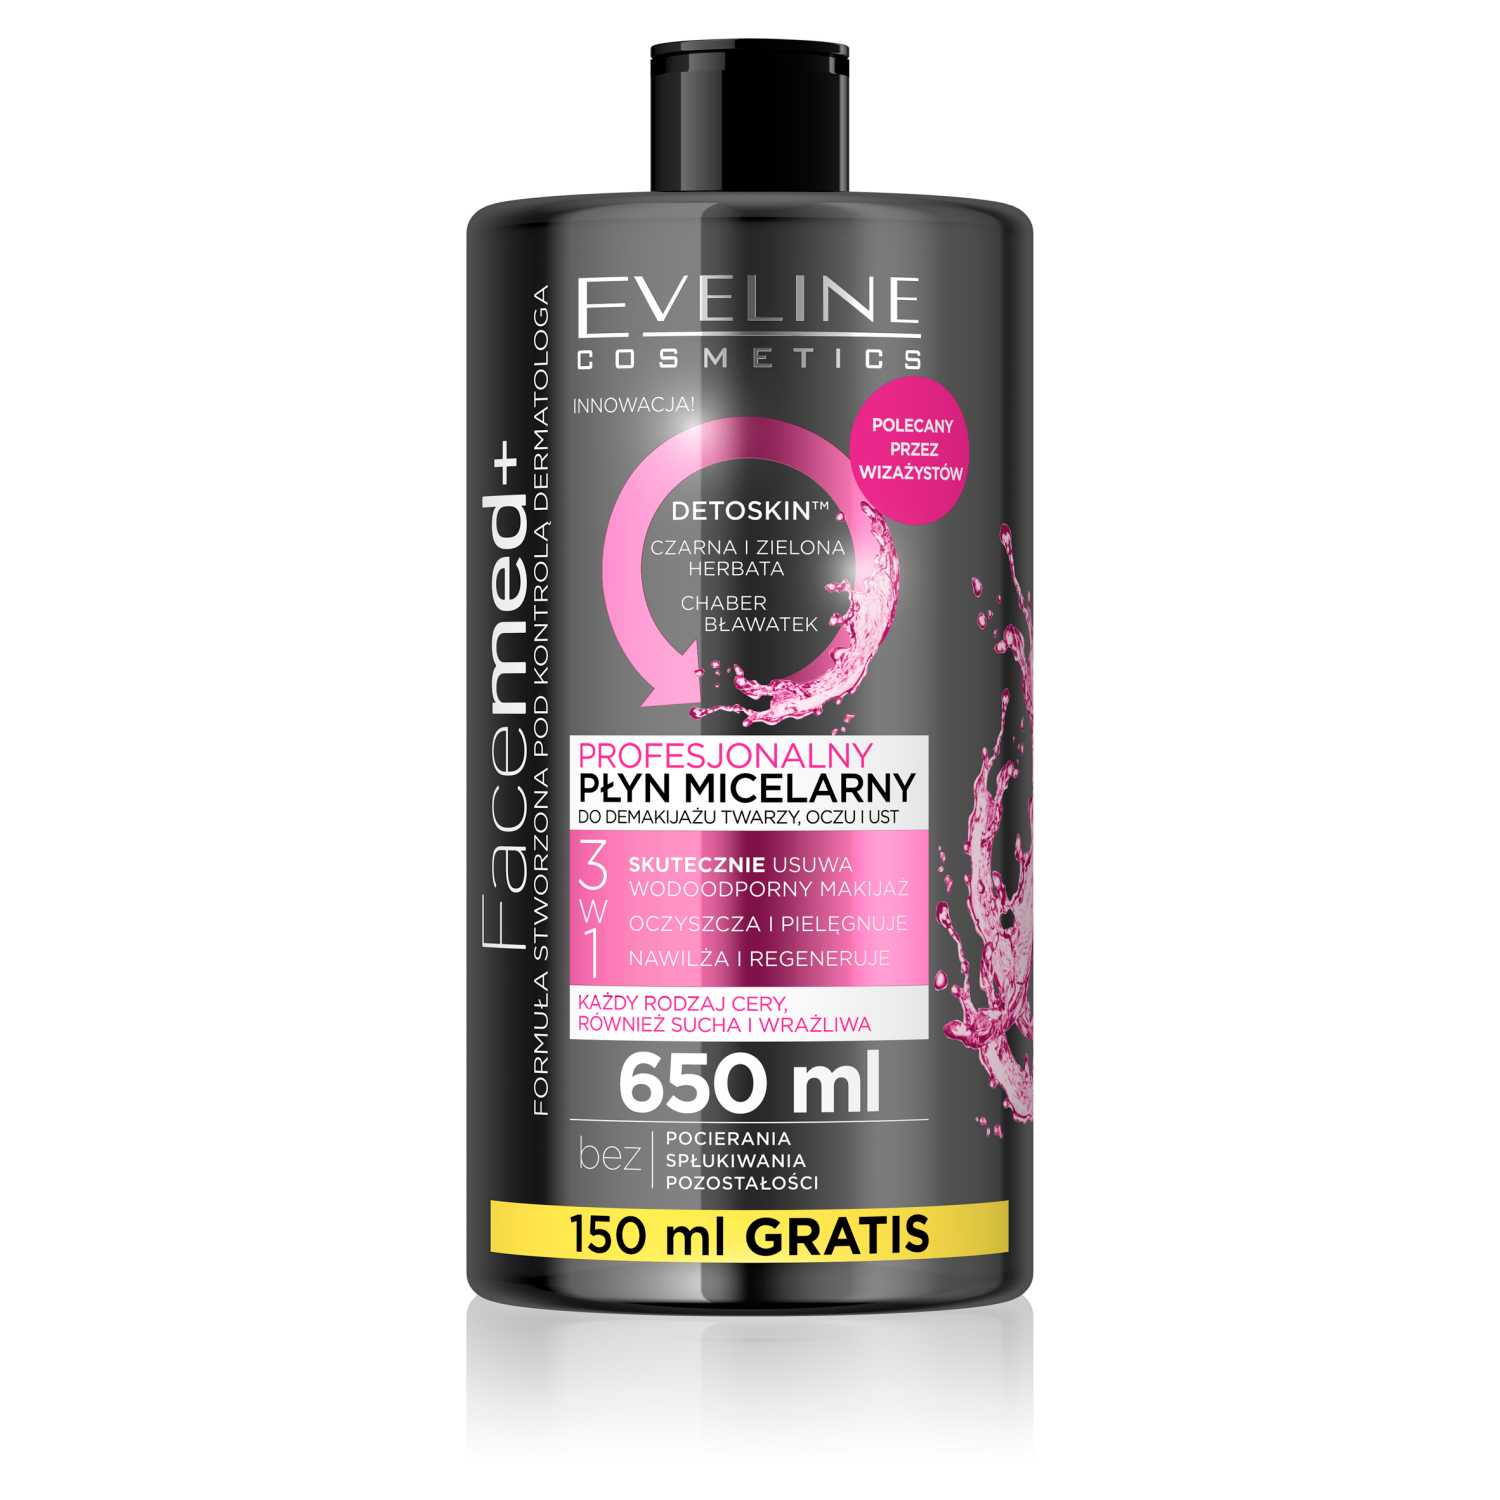 Eveline Cosmetics Facemed Prof профессиональная мицеллярная вода 3в1, 650 мл